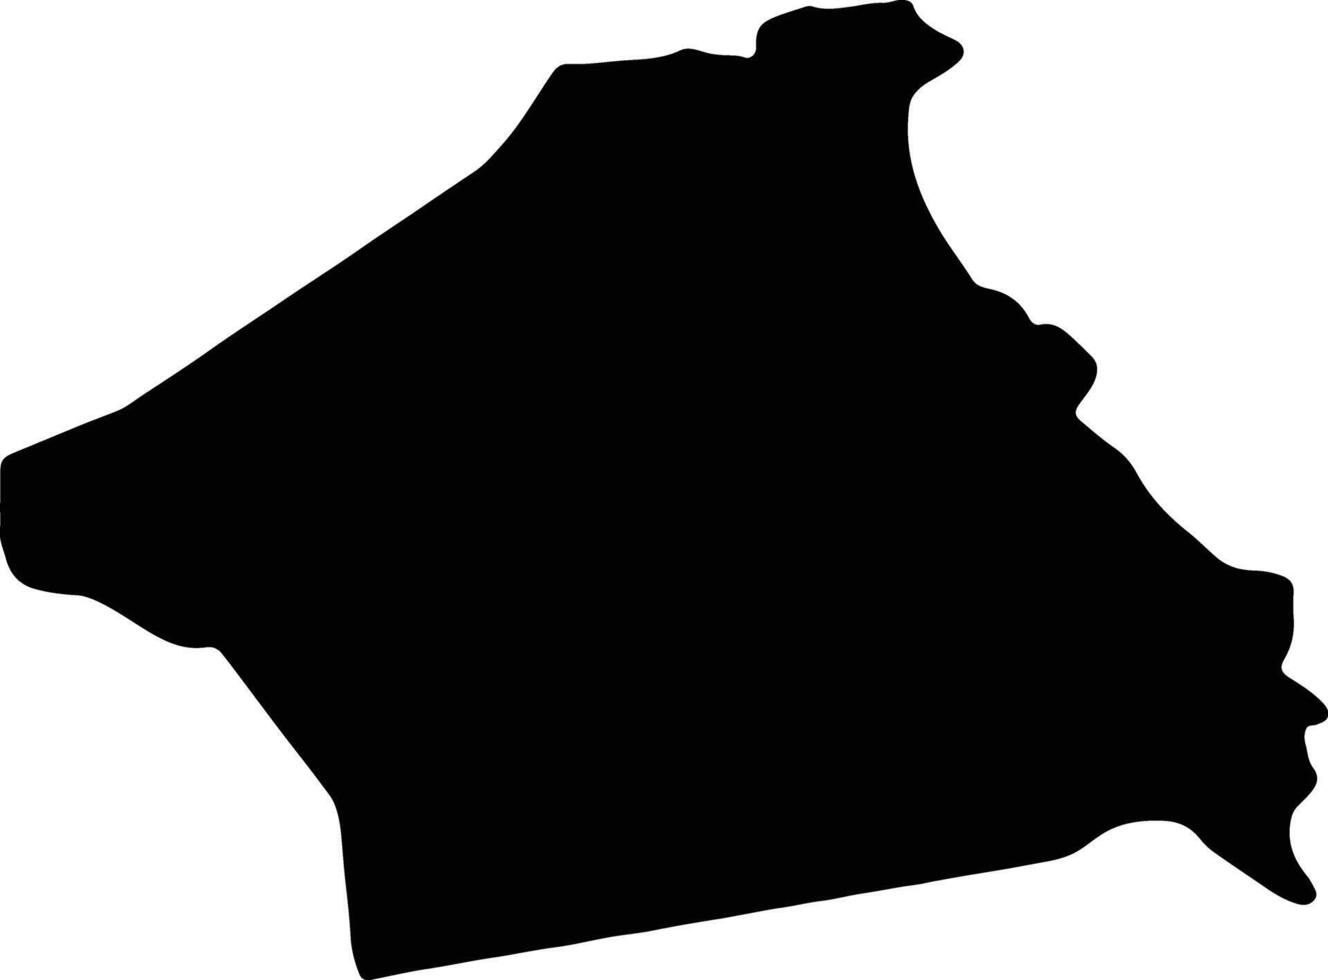 Kebili Tunisia silhouette map vector